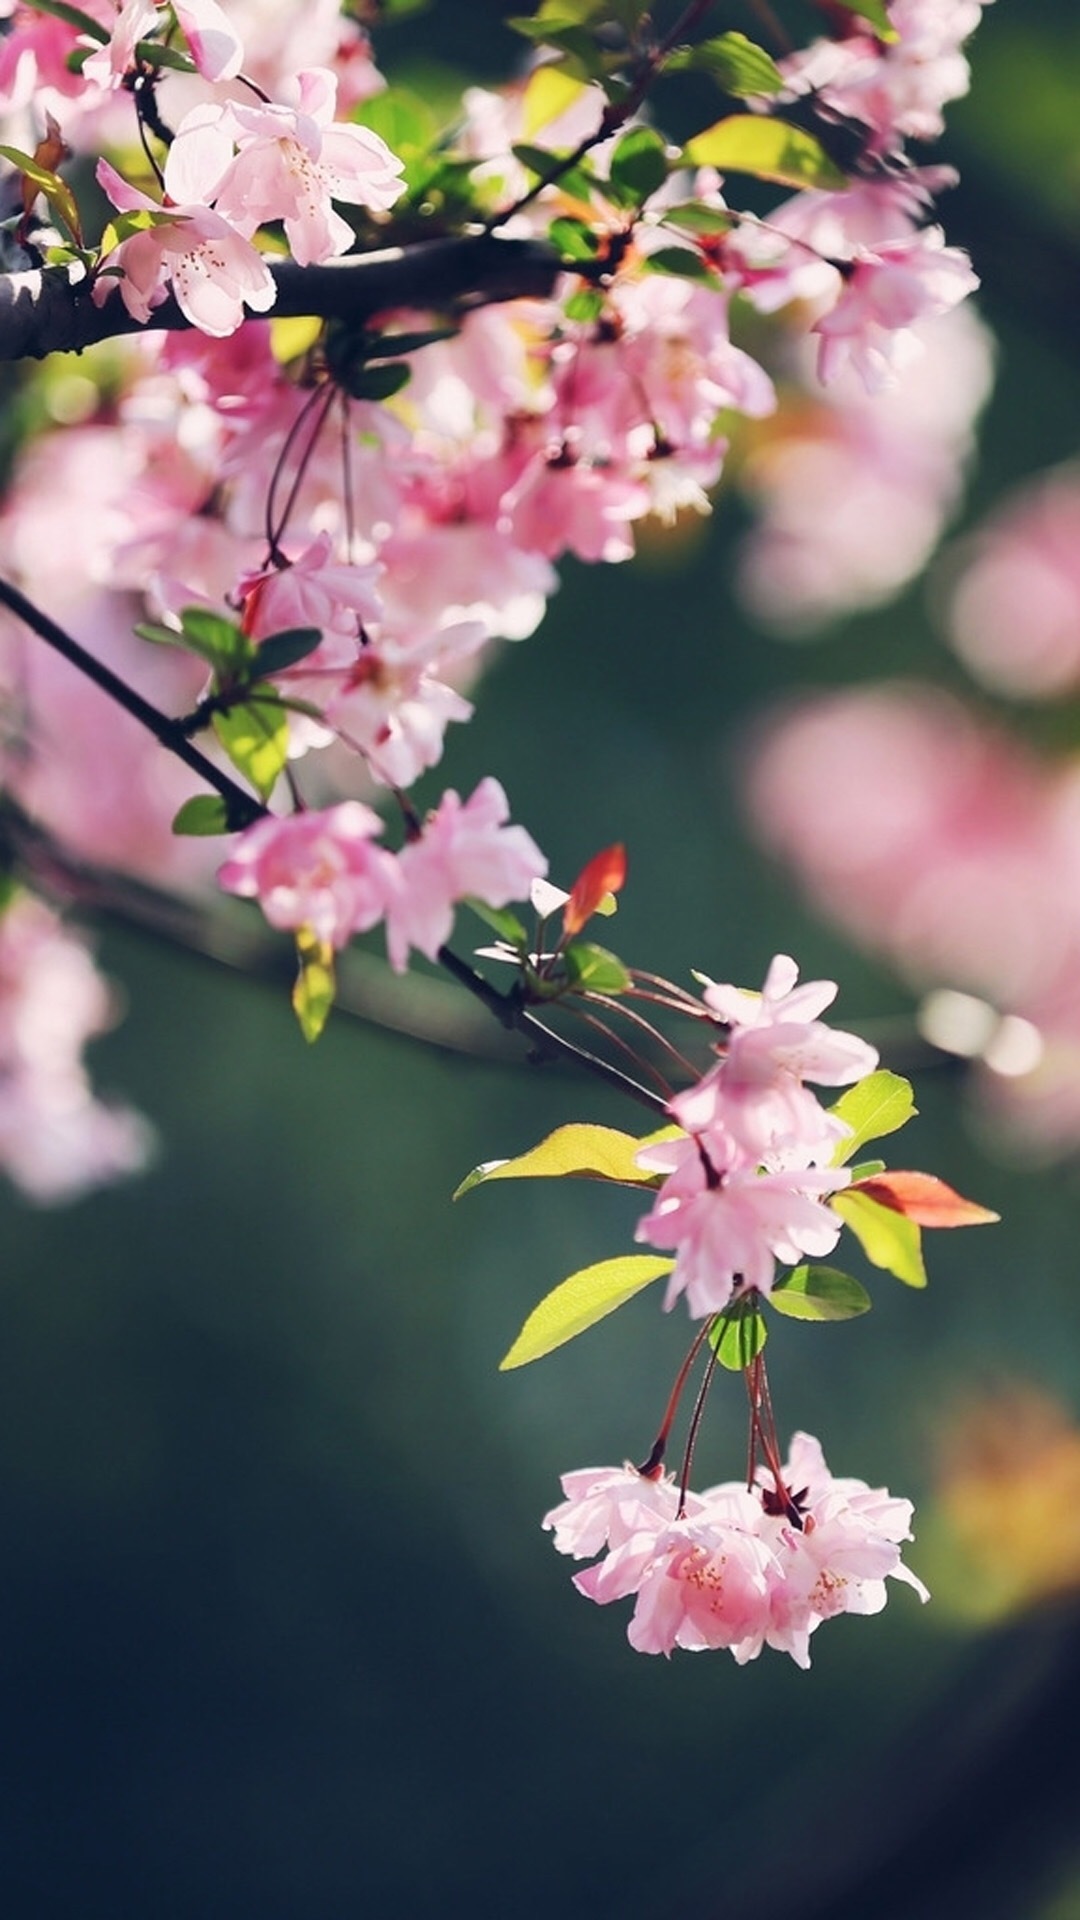 唯美樱花树图片高清手机壁纸,植物,风景,植物,高清,樱花,自然,摄影,手机壁纸高清个性